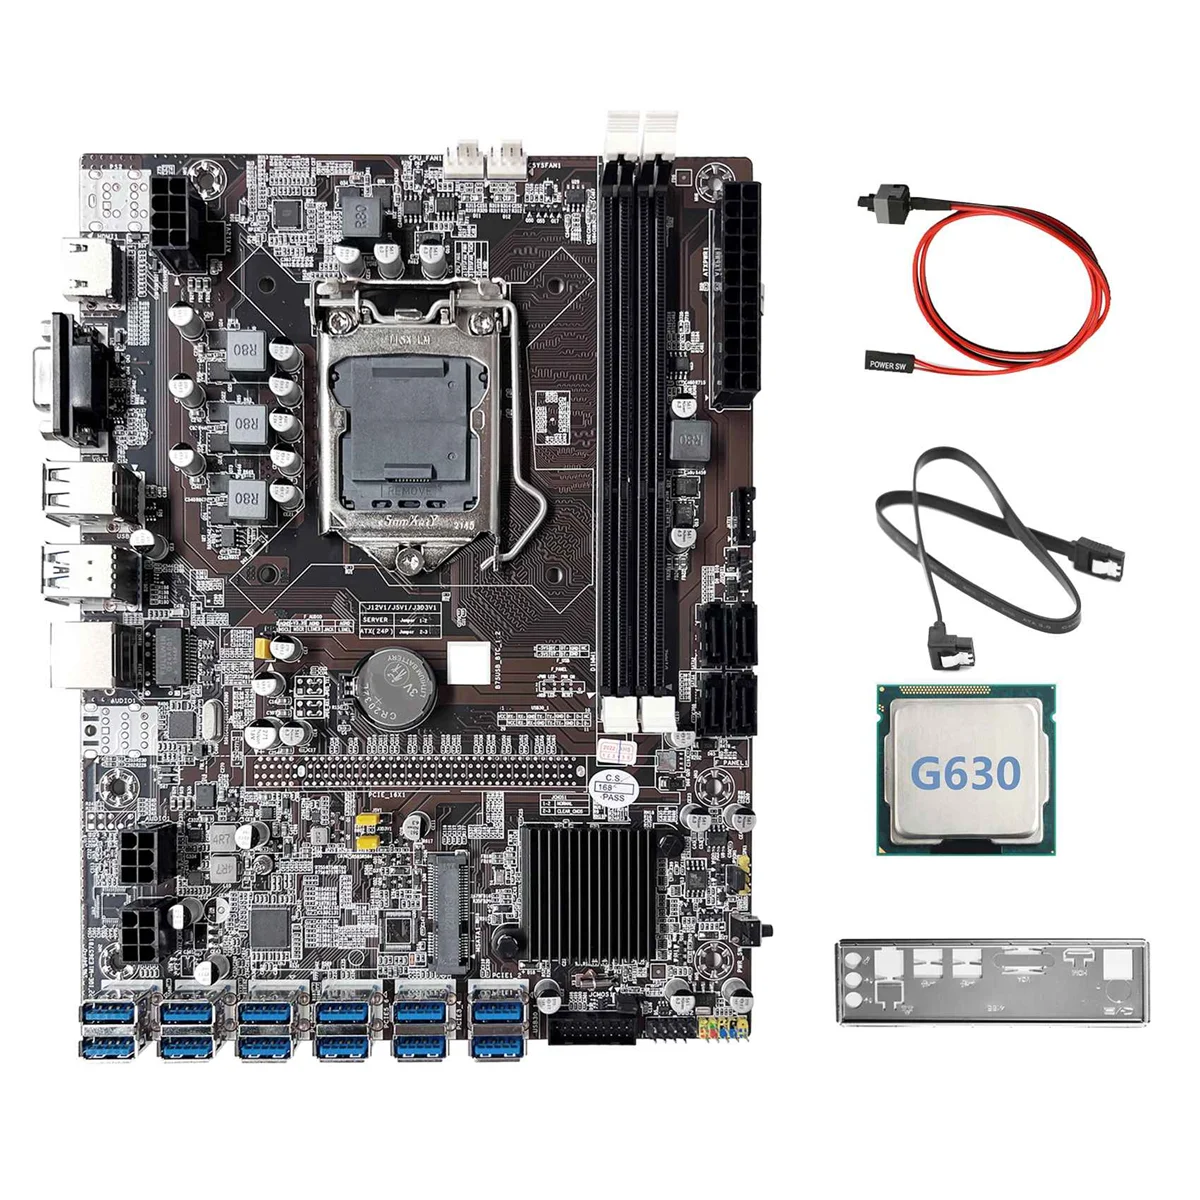 Материнская плата для майнинга B75 12GPU BTC + процессор G630 + кабель SATA + Кабель переключателя Поддержка 2XDDR3 RAM USB3.0 Материнская плата для майнинга B75 12USB